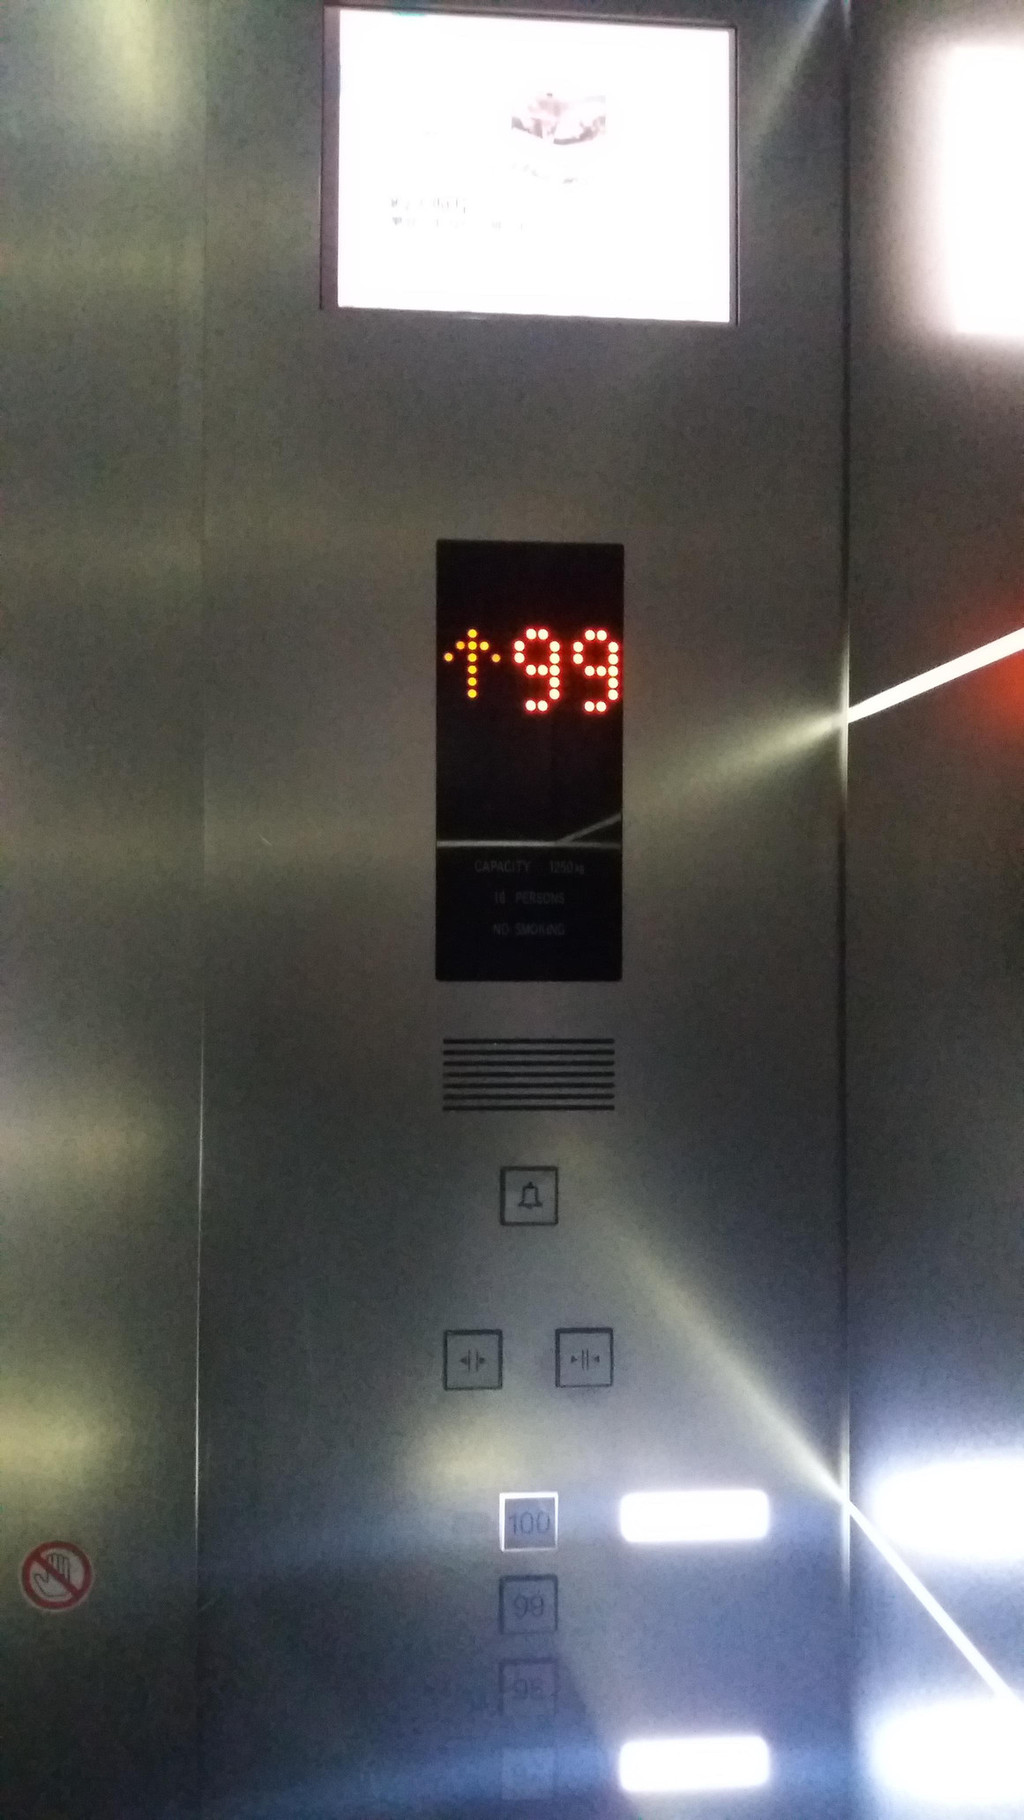 电梯停在了100层,该升降梯的载重限量:1250千克;限乘人数:16人.